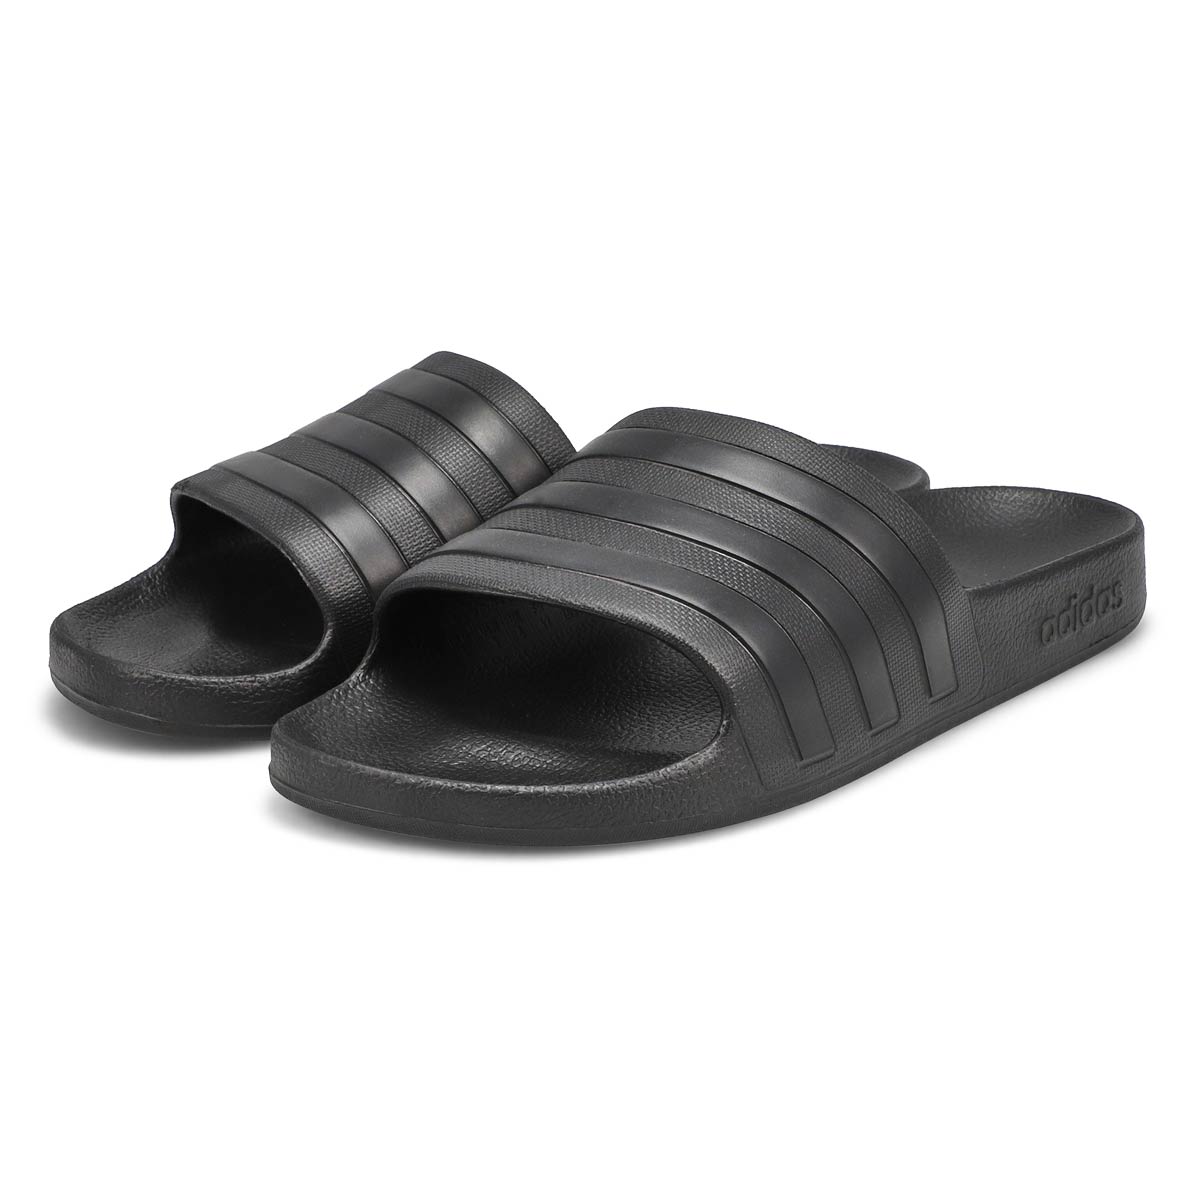 Women's Adilette Aqua Slide Sandal - Black/Black